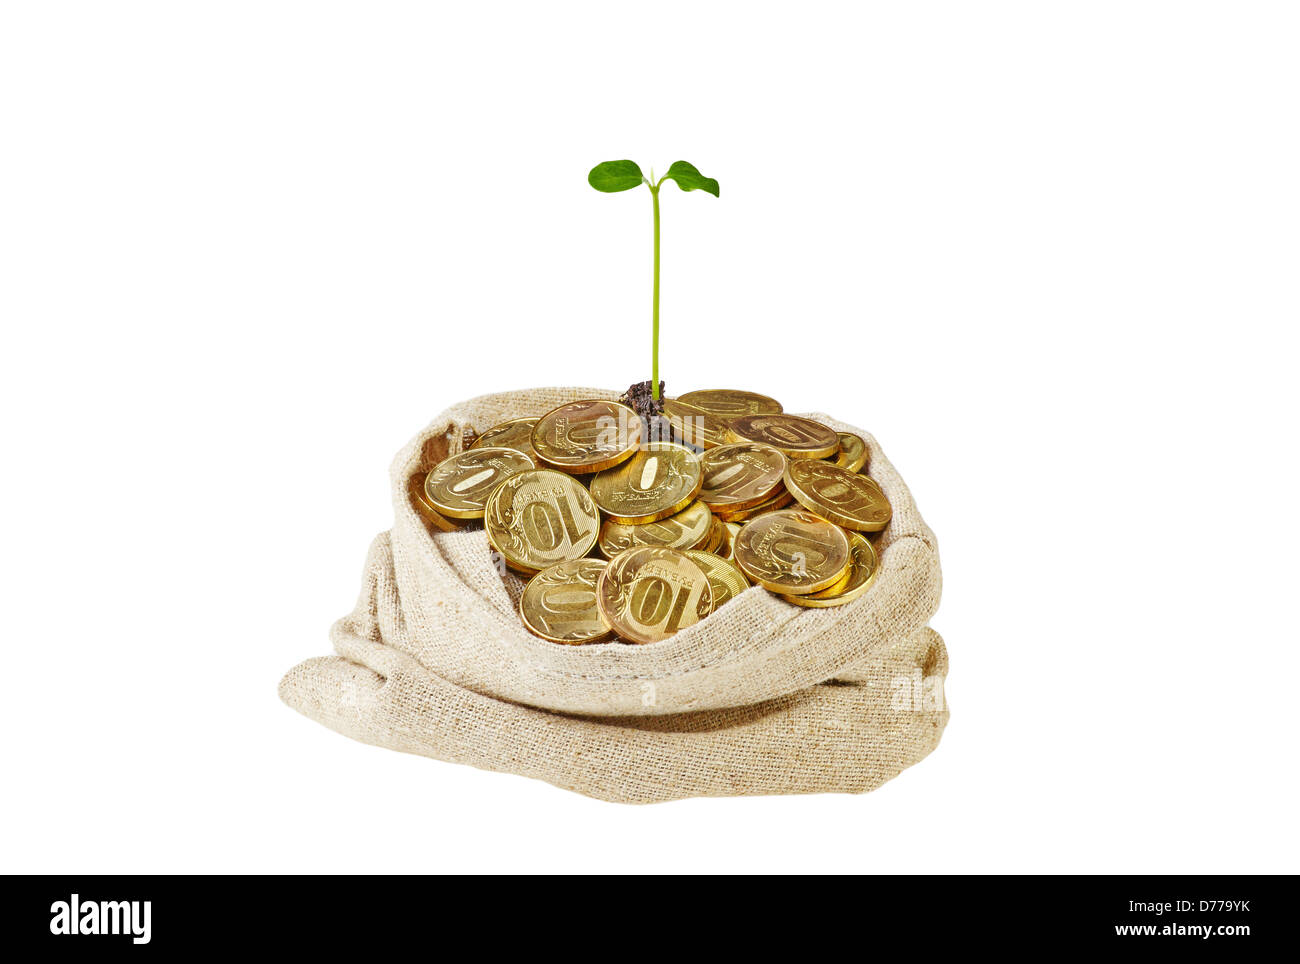 Borsa di tela piena di monete d'oro e una dolce germoglio verde. Isolato su bianco Foto Stock